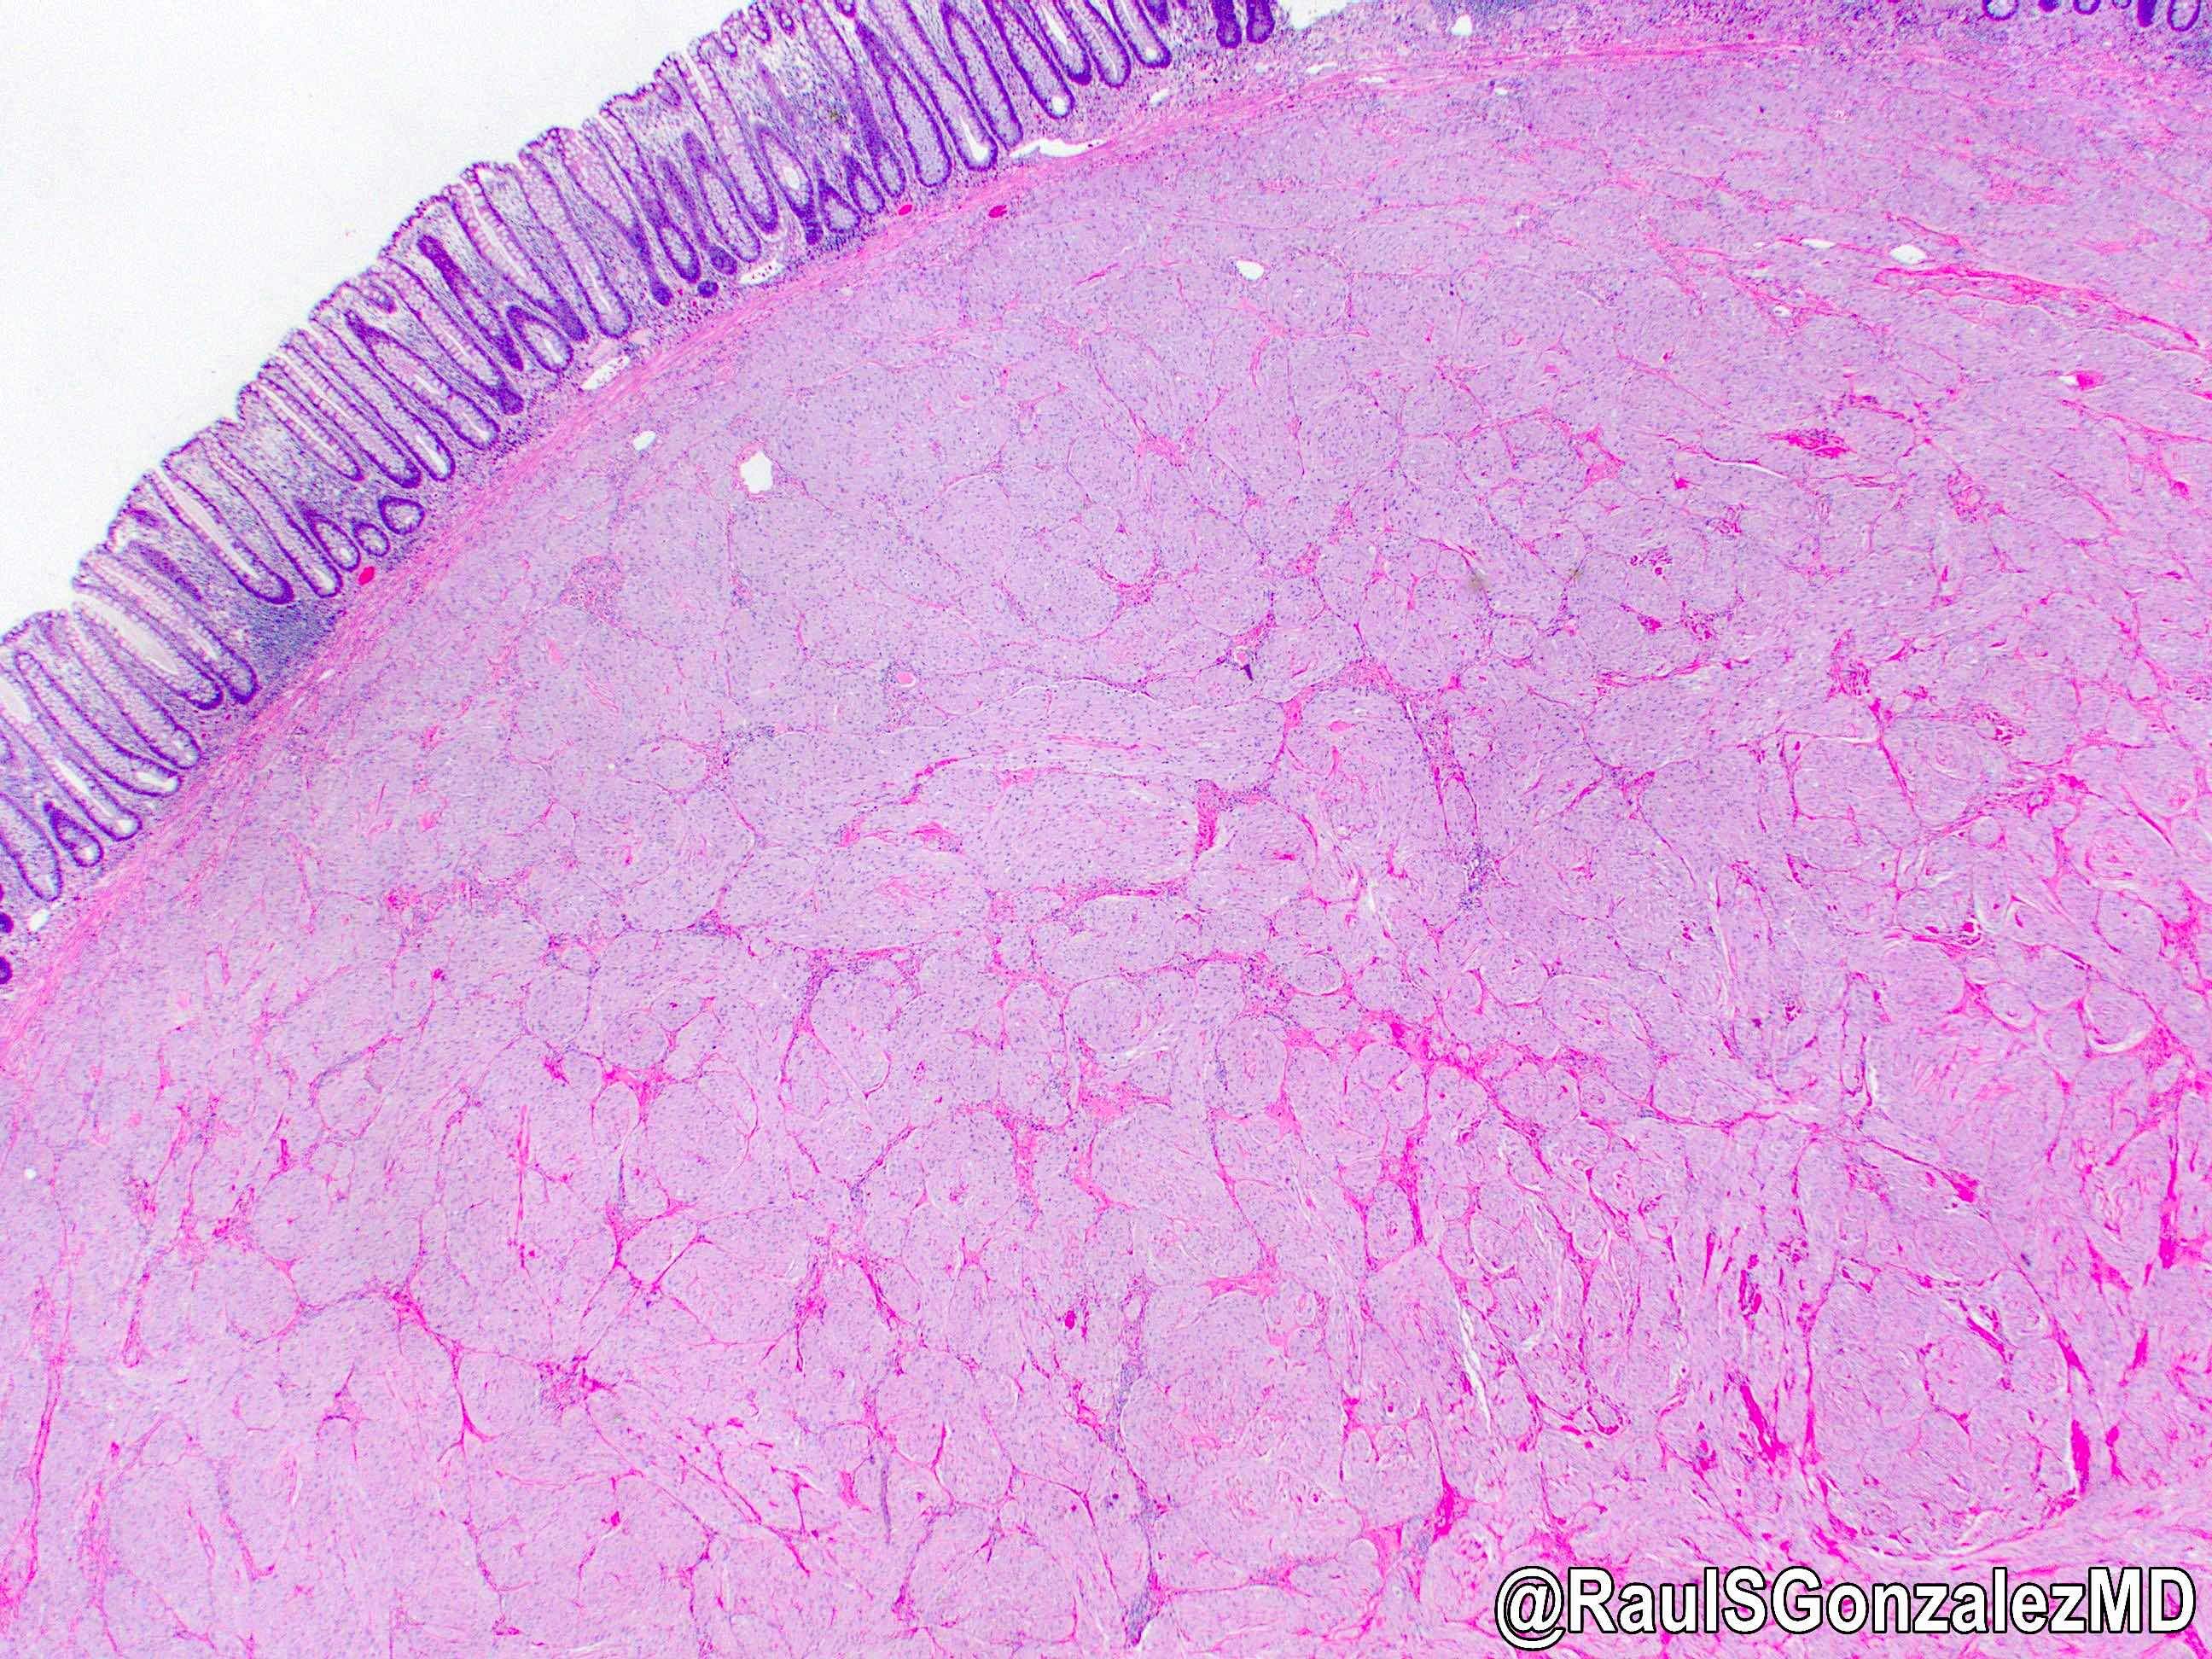 Granular cell tumor